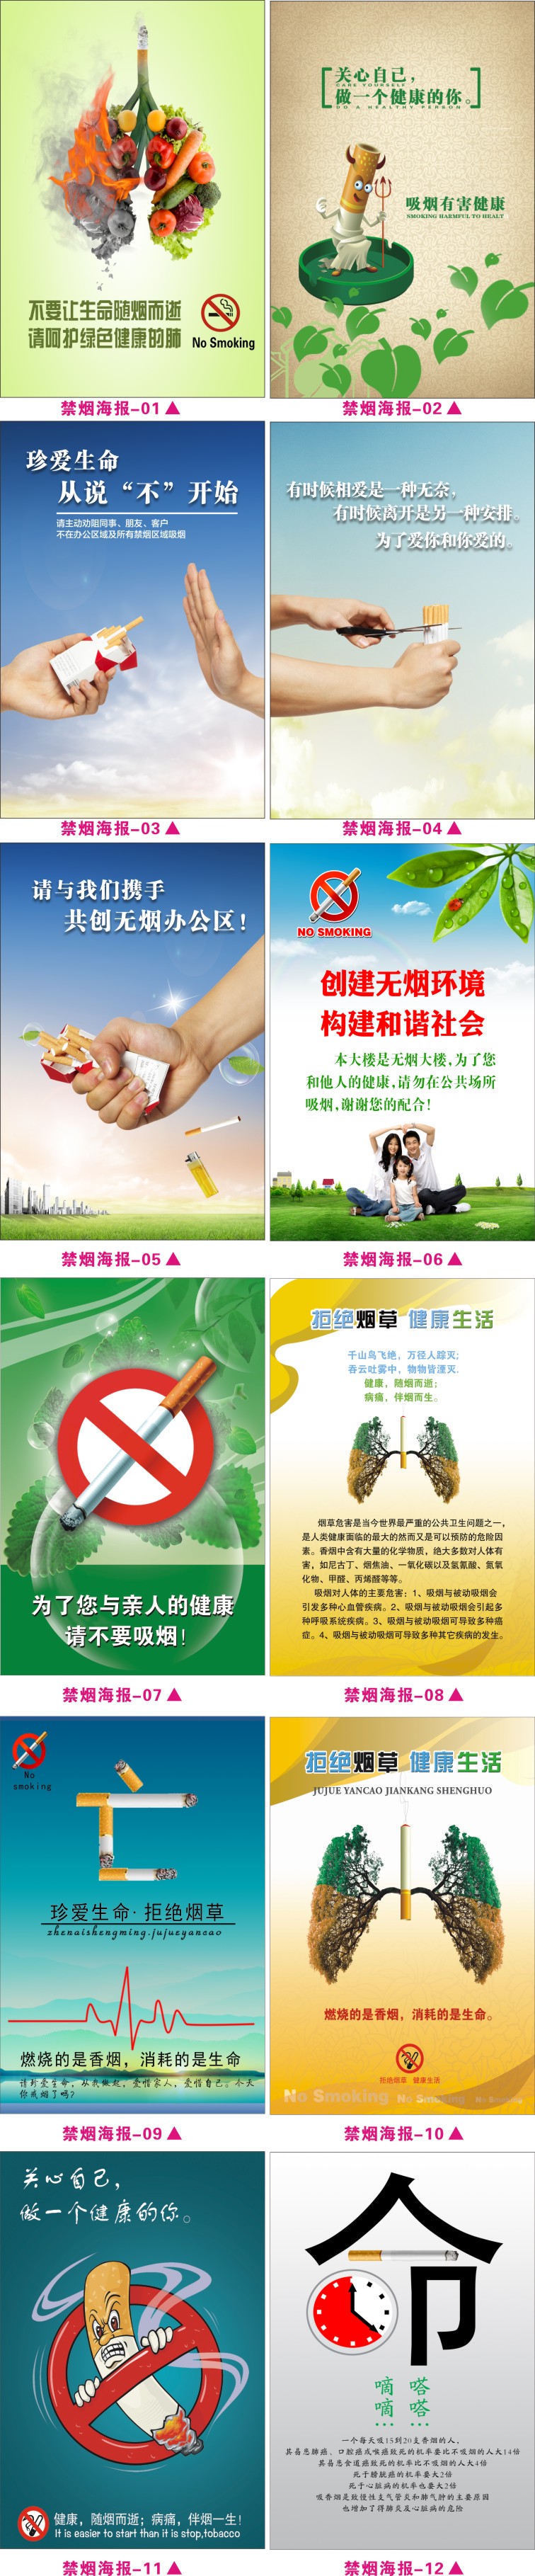 禁烟控烟宣传海报吸烟有害健康环保挂图禁止吸烟宣传展板贴画海报